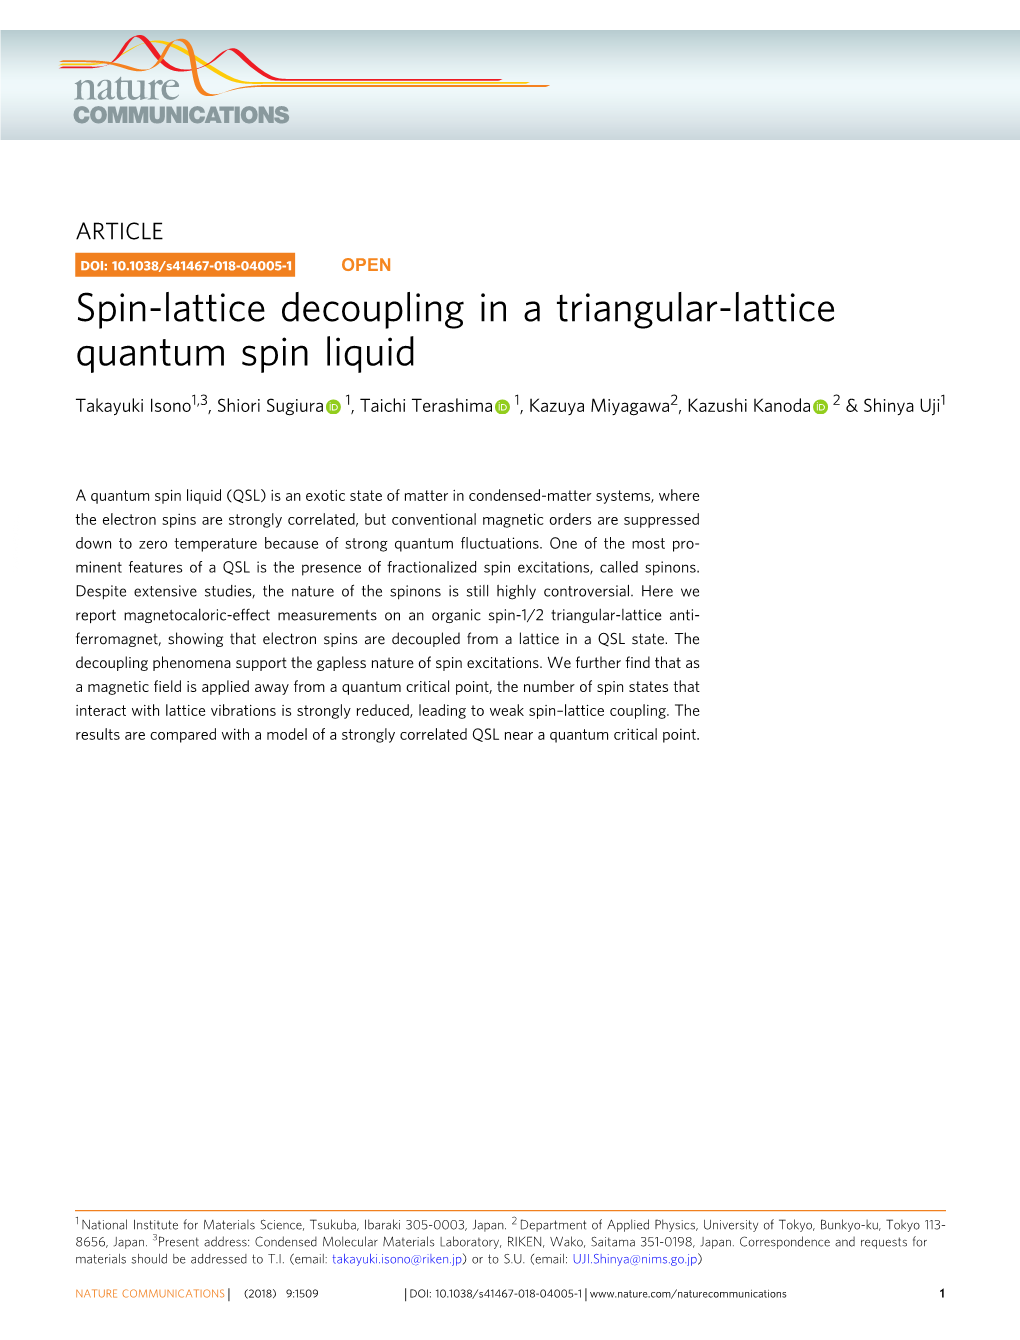 Spin-Lattice Decoupling in a Triangular-Lattice Quantum Spin Liquid